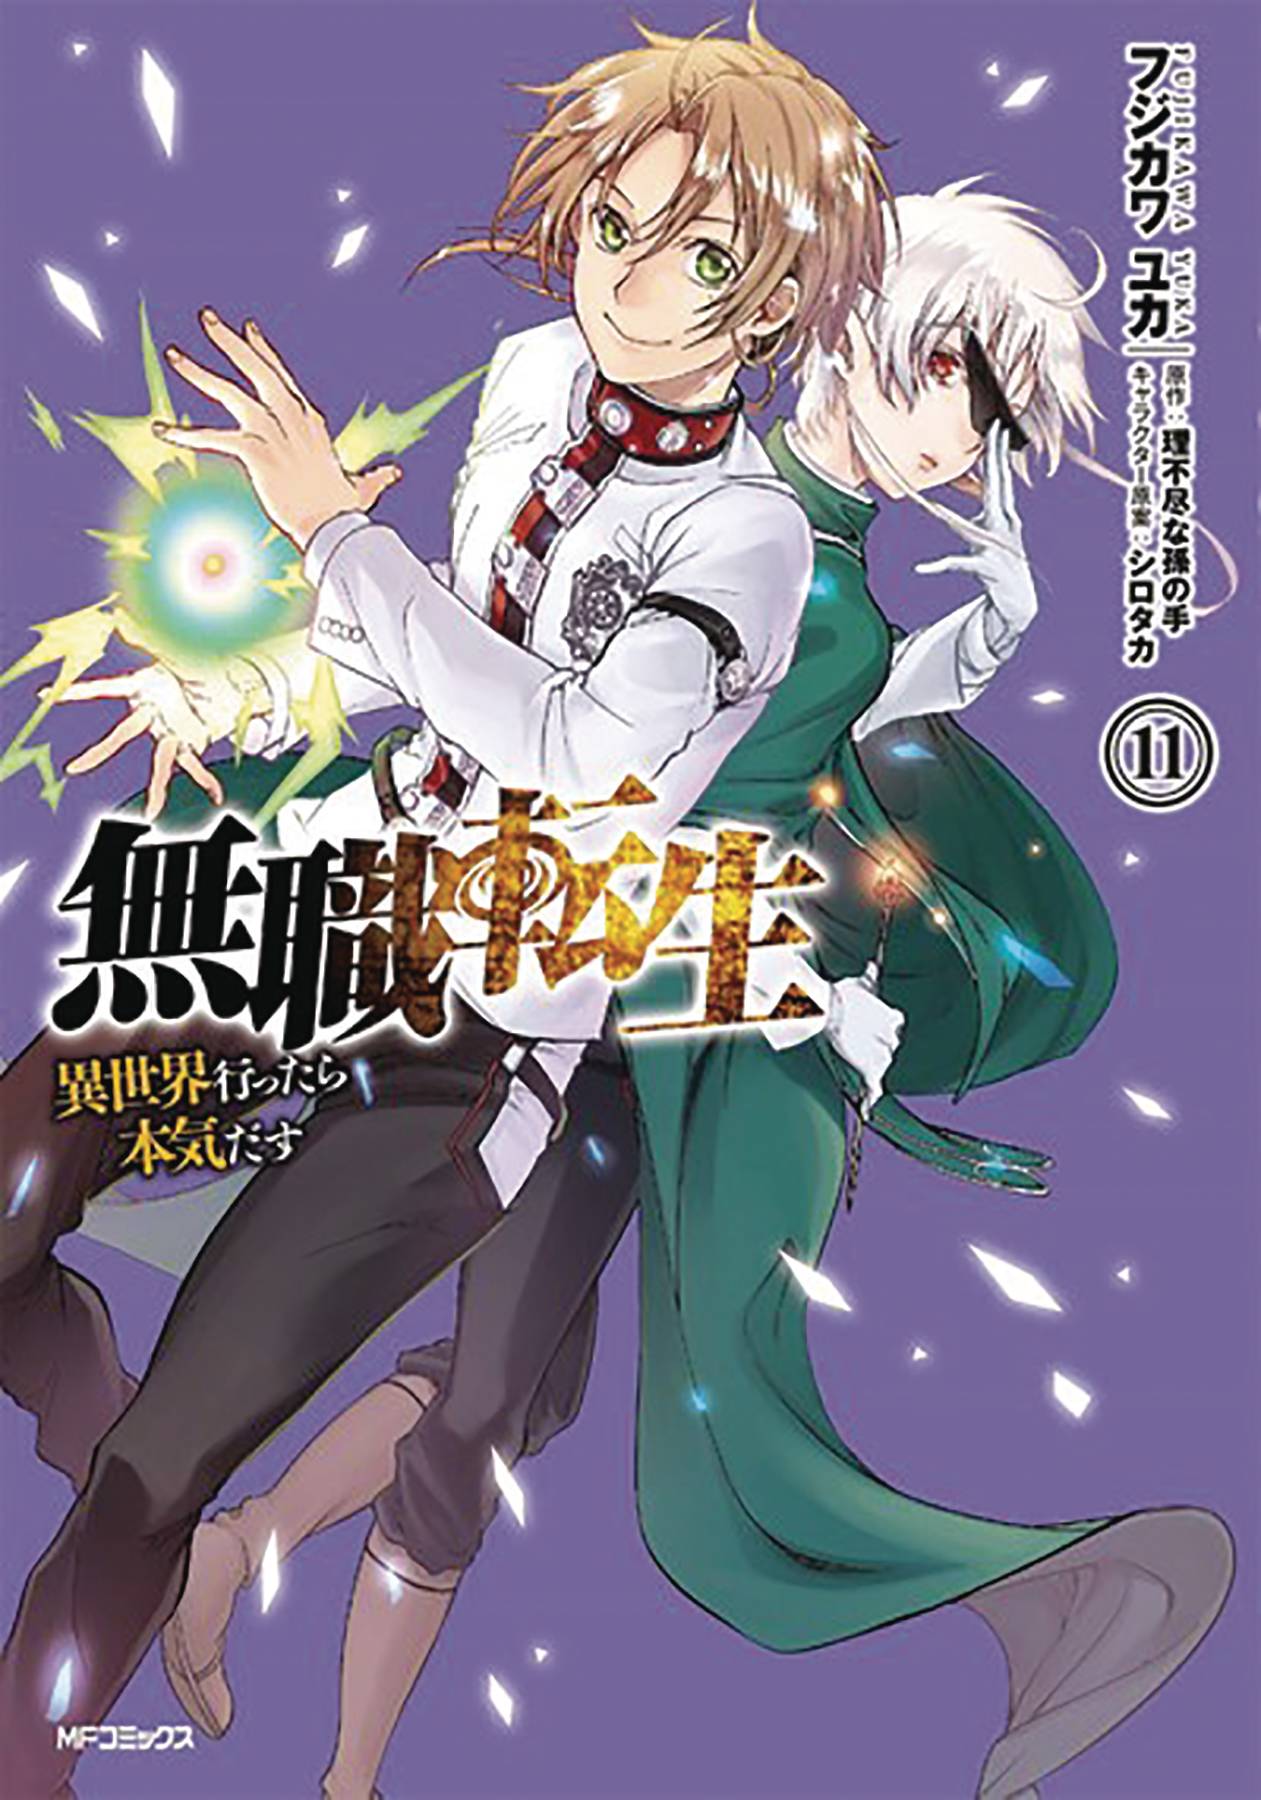 Jul201825 Mushoku Tensei Jobless Reincarnation Light Novel Sc Vol 07